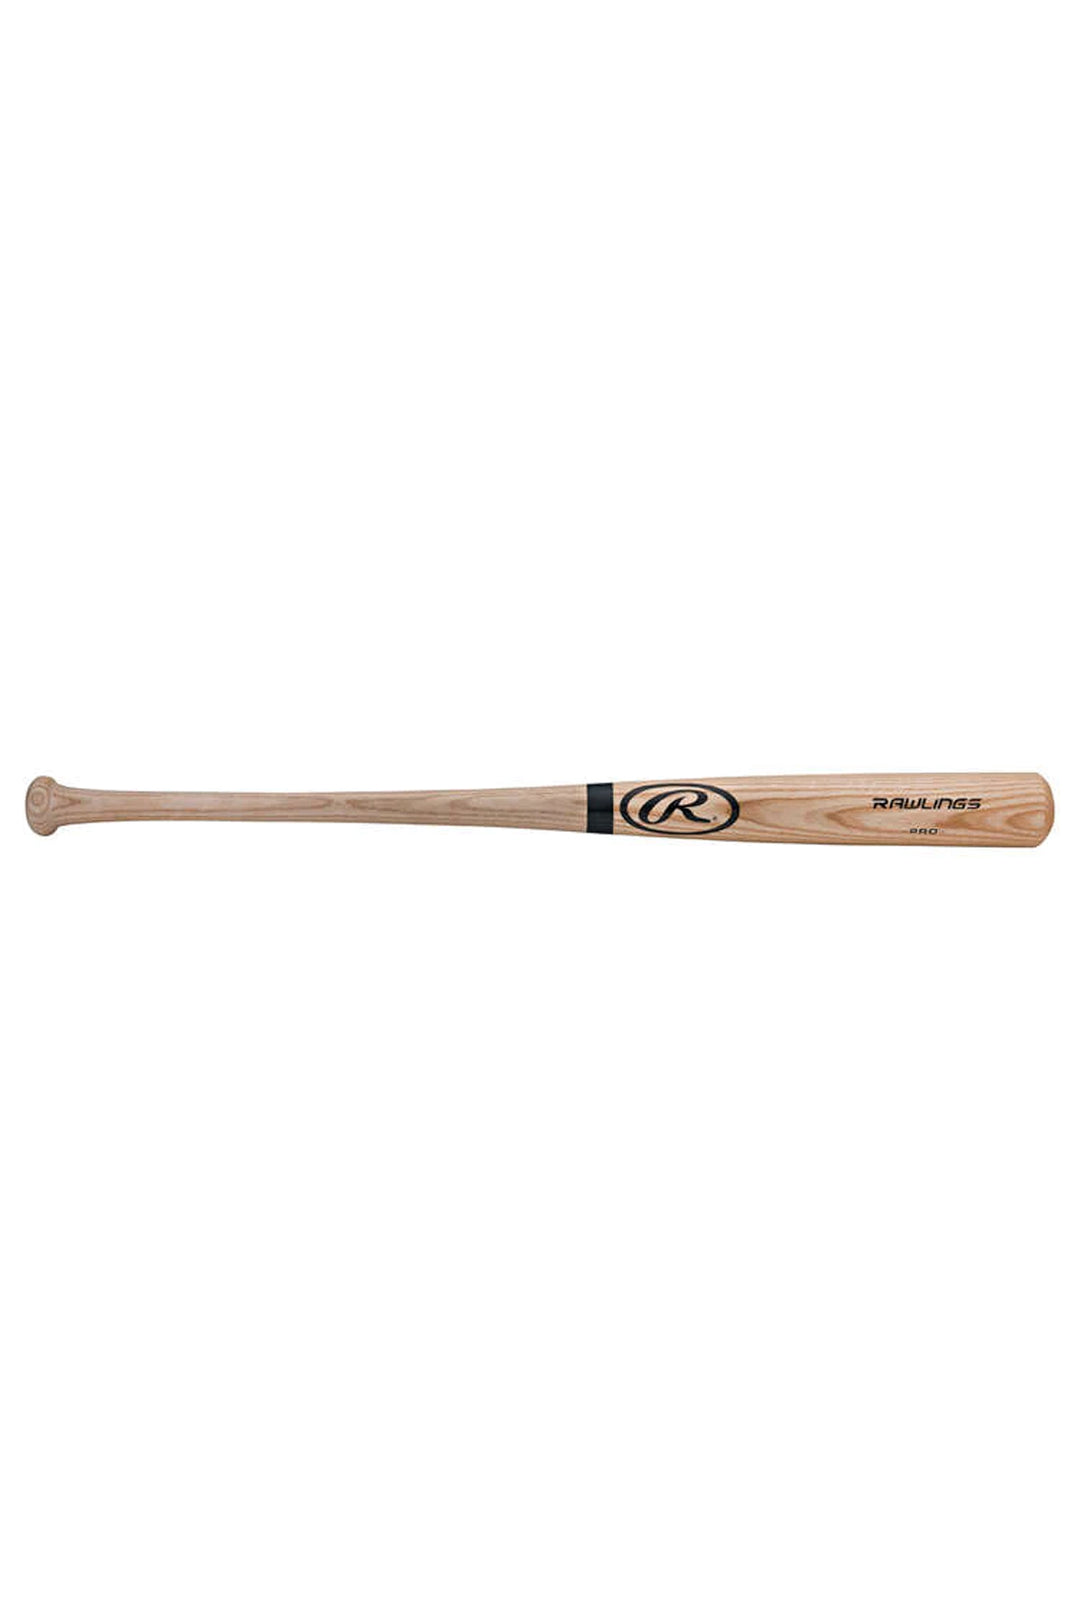 Rawling Pro Adirondack Ash Baseball Bat Natural